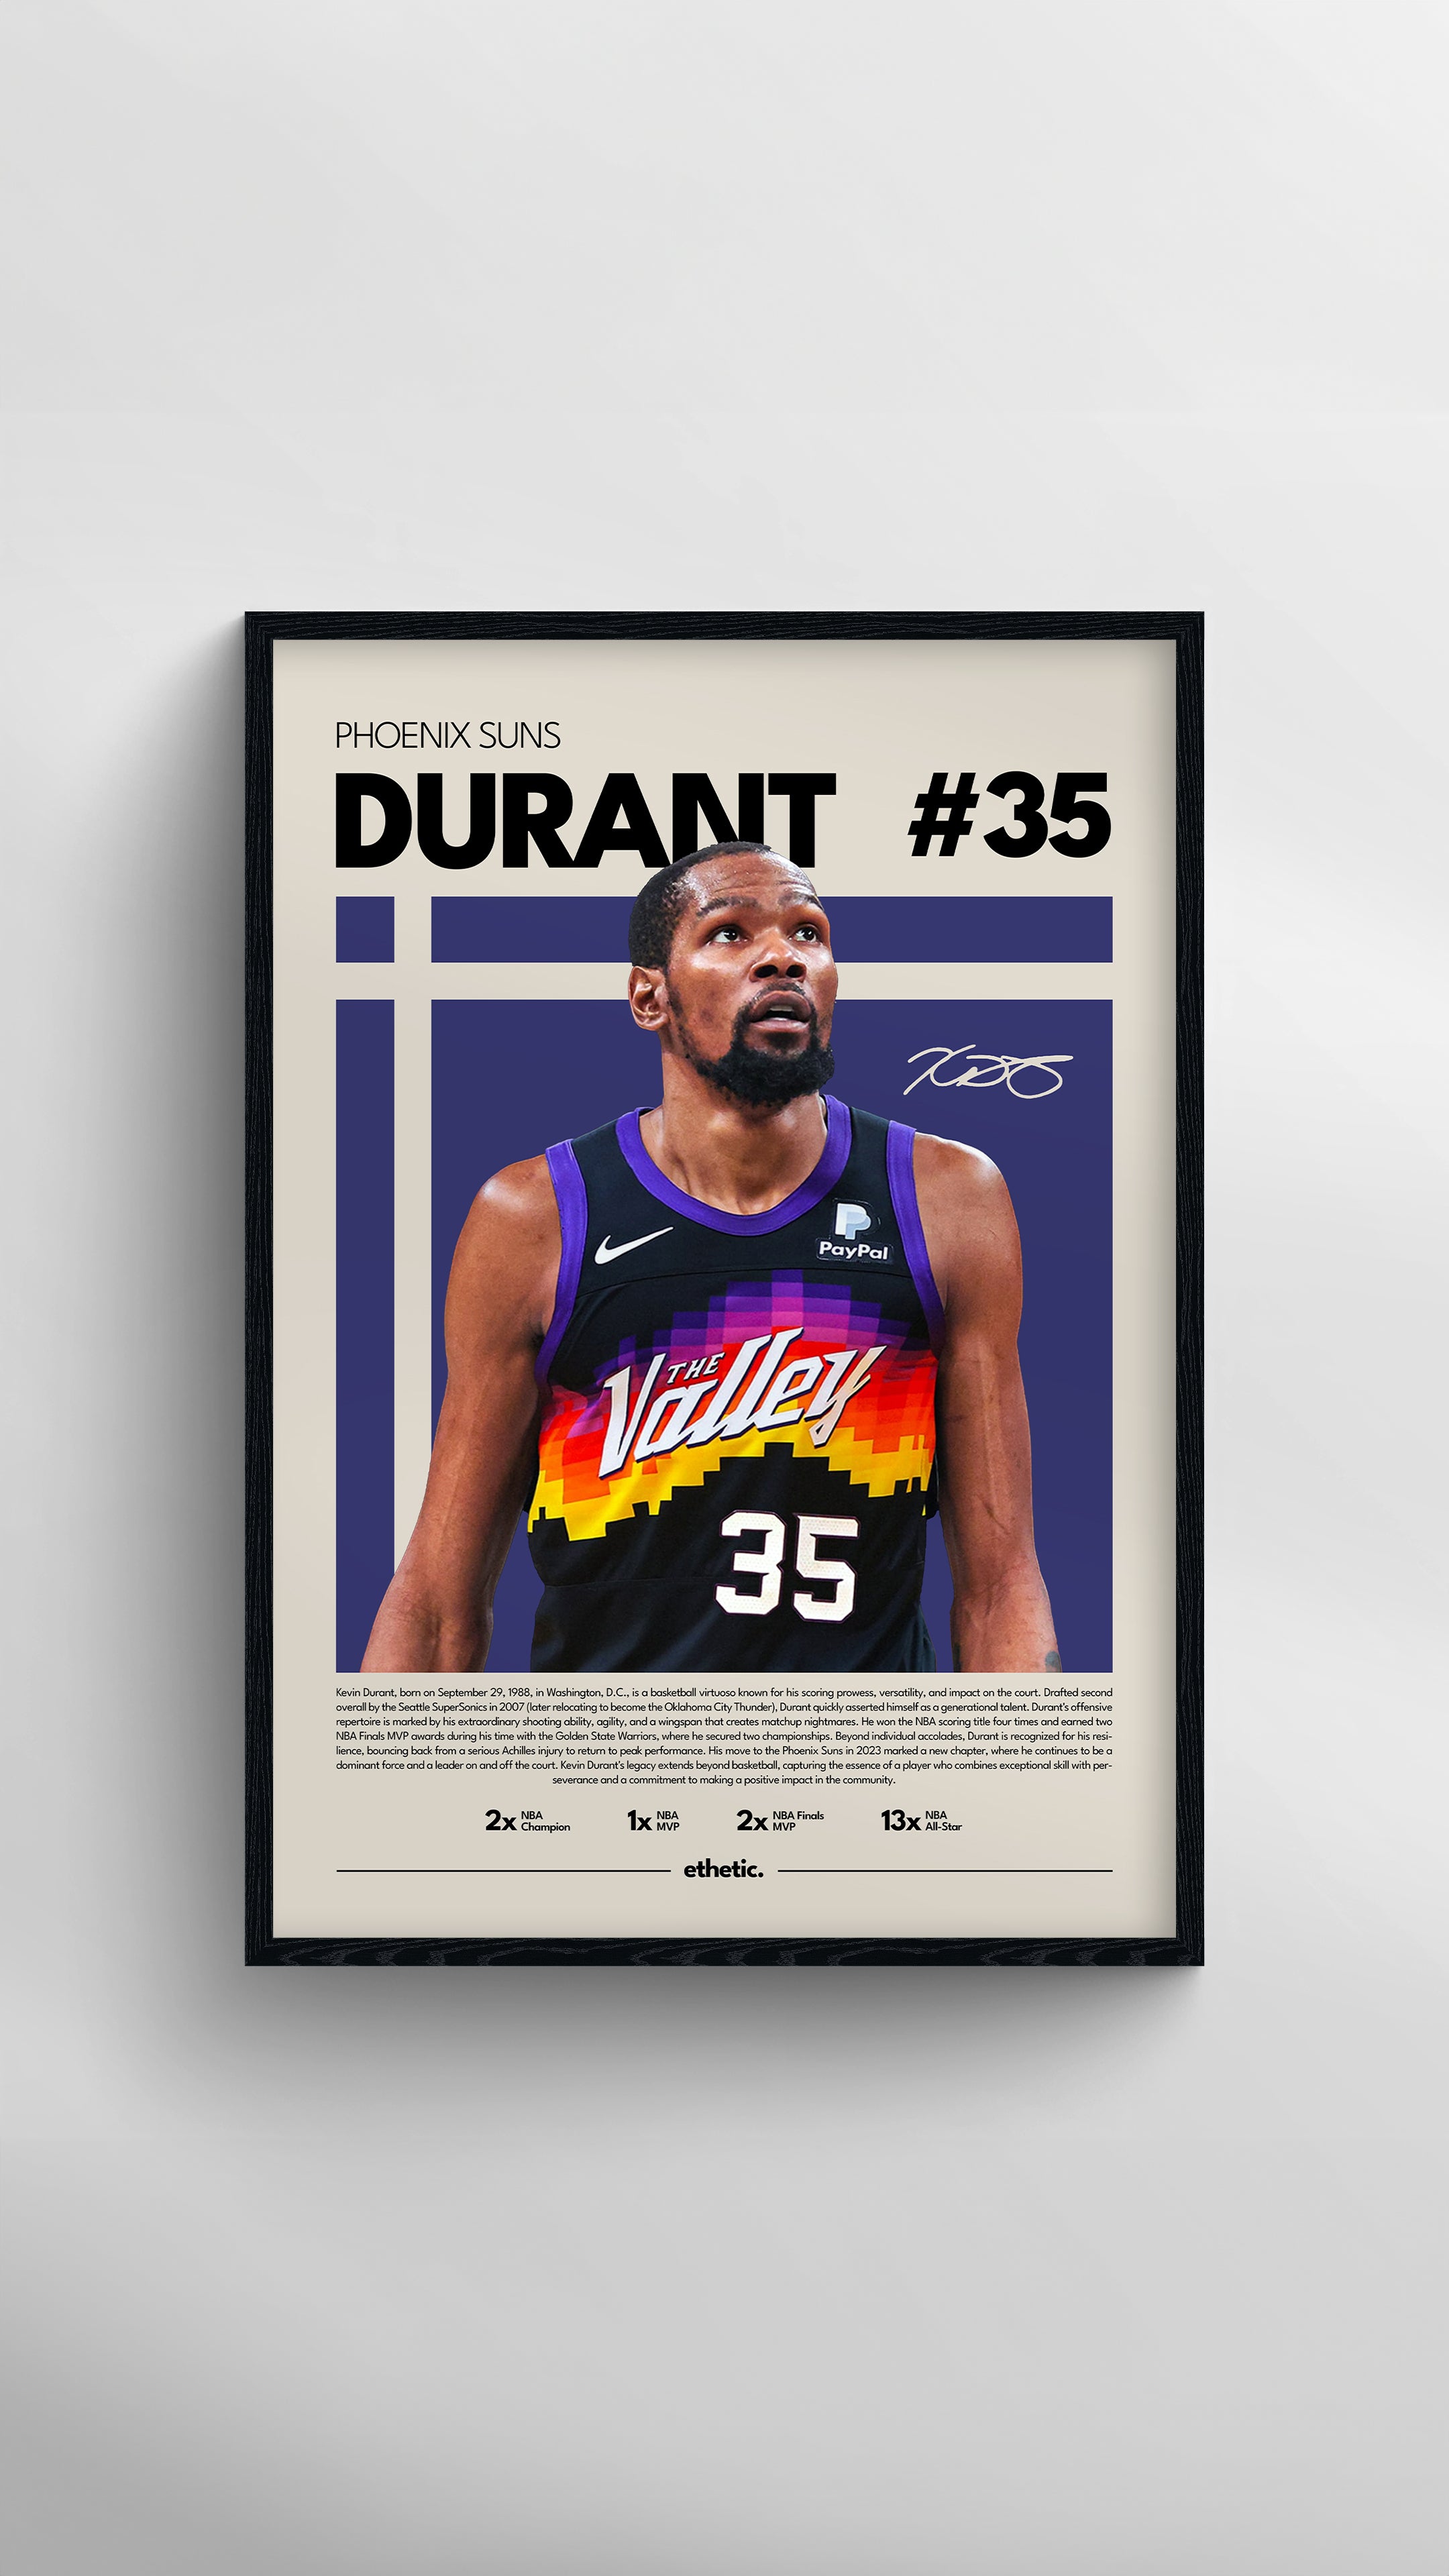 Legends Never Die Kevin Durant 2017 Basketball Championship MVP Framed On  Paper Print